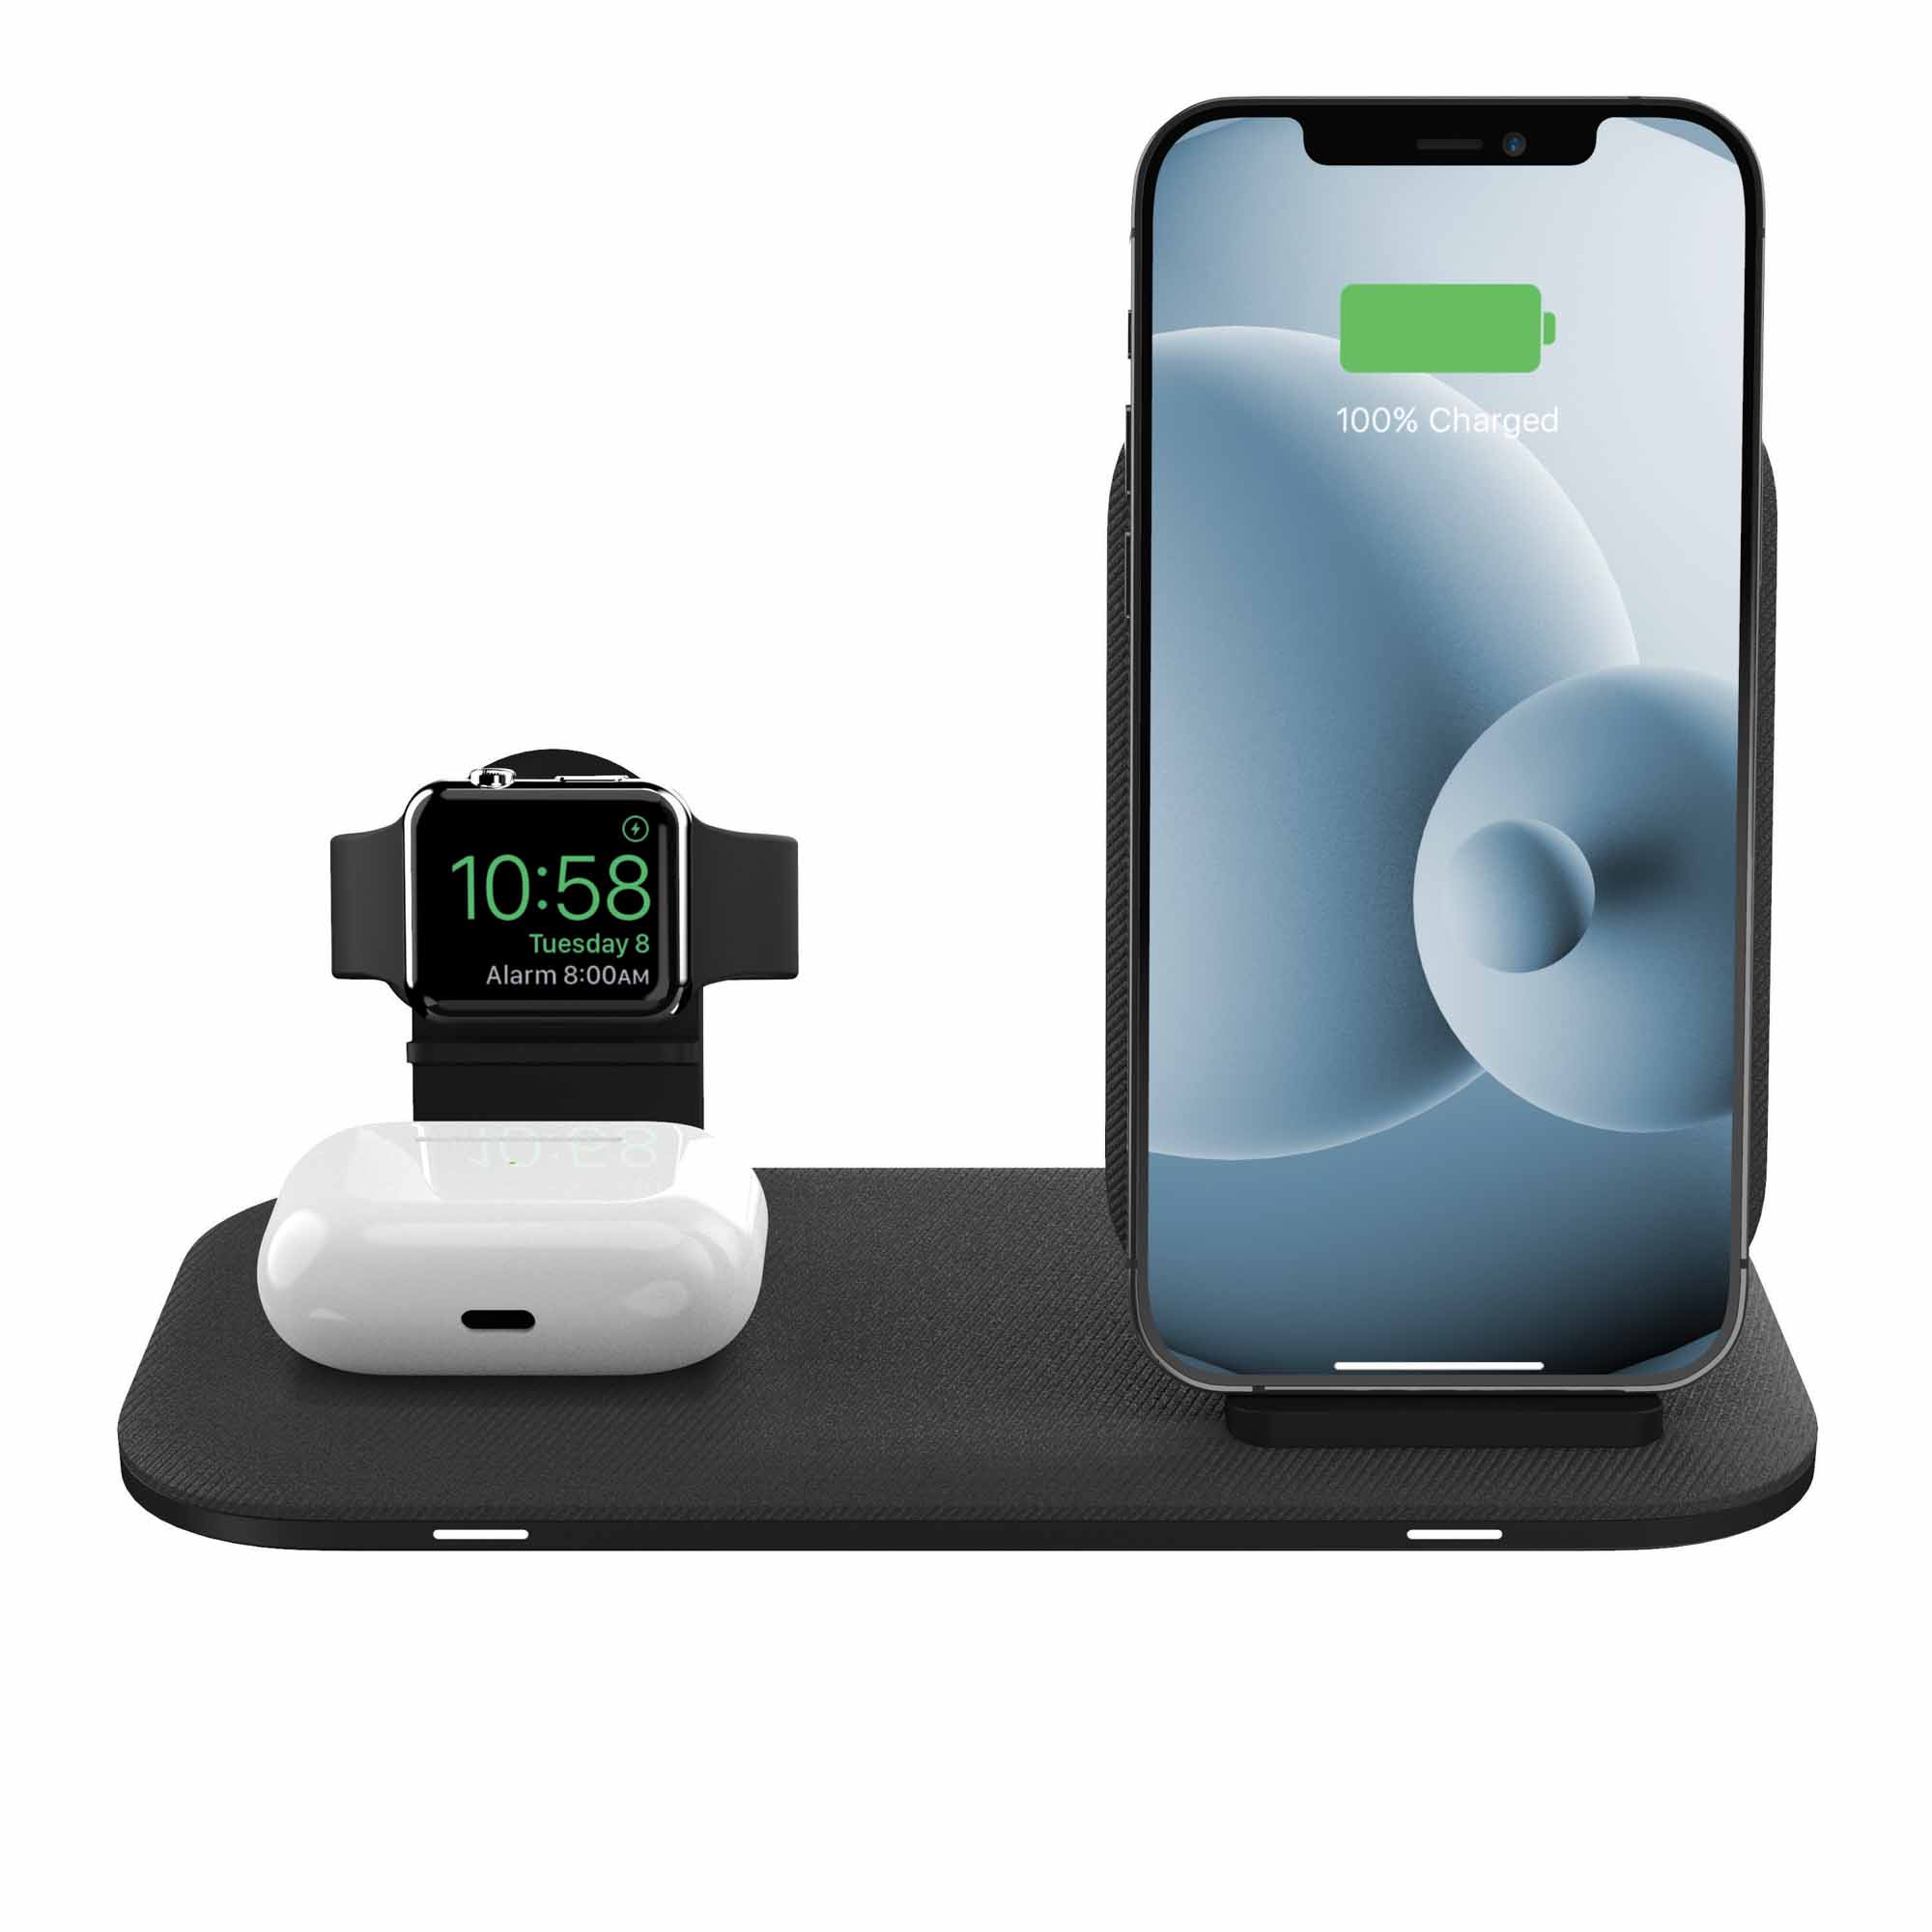 Новейшее зарядное устройство Mophie для нескольких устройств поддерживает iPhone, AirPods и Apple Watch за 80 долларов.